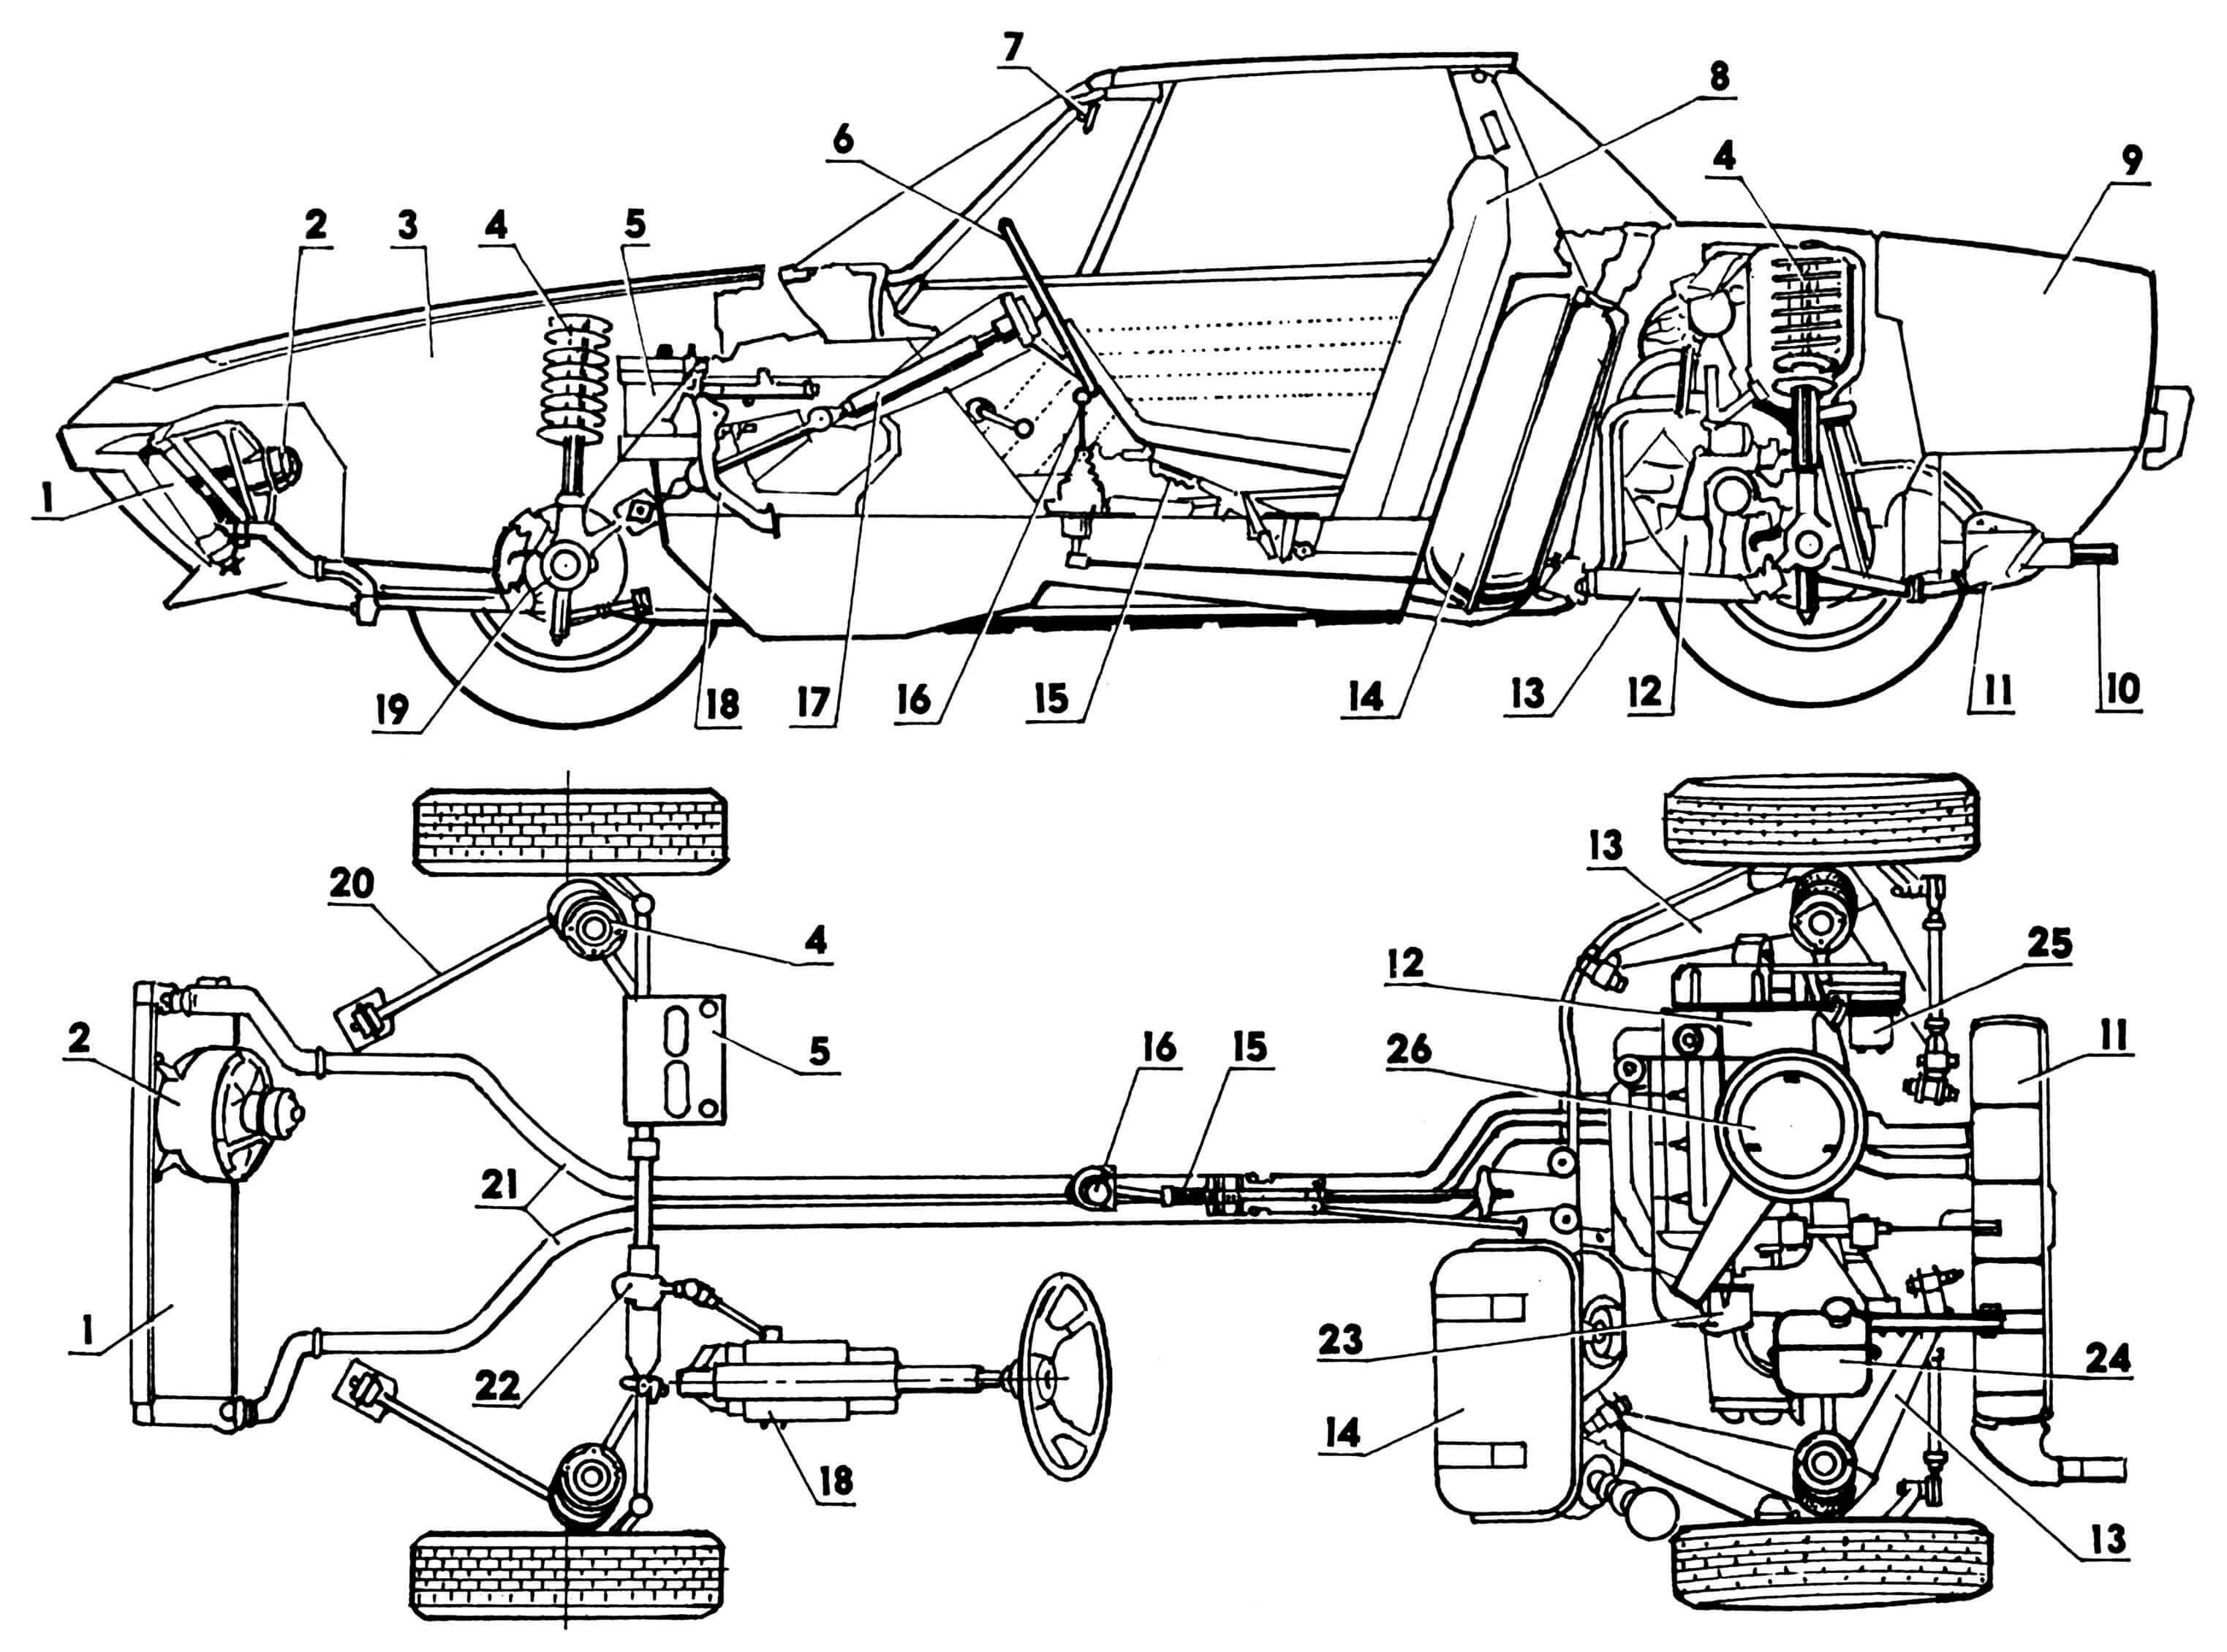 Компоновка (на виде сверху кузов и сиденья условно не показаны): 1 — радиатор; 2 — вентилятор; 3 — багажник передний; 4 — пружины подвесок; 5 — аккумулятор; 6 — колесо рулевое; 7 — зеркало заднего вида; 8 — сиденье; 9 — багажник задний; 10 — труба выхлопная; 11 — глушитель; 12 — двигатель; 13 — рычаги подвески; 14 — бензобак; 15 — рычаг ручного тормоза; 16 — рычаг КПП; 17 — вал рулевой; 18 — узел педальный; 19 — тормоз дисковый; 20 — тяга продольная; 21 — трубопроводы системы охлаждения двигателя; 22 — механизм рулевой; 23 — прерыватель-распределитель; 24 — бачок расширительный; 25 — генератор; 26 — фильтр воздушный.